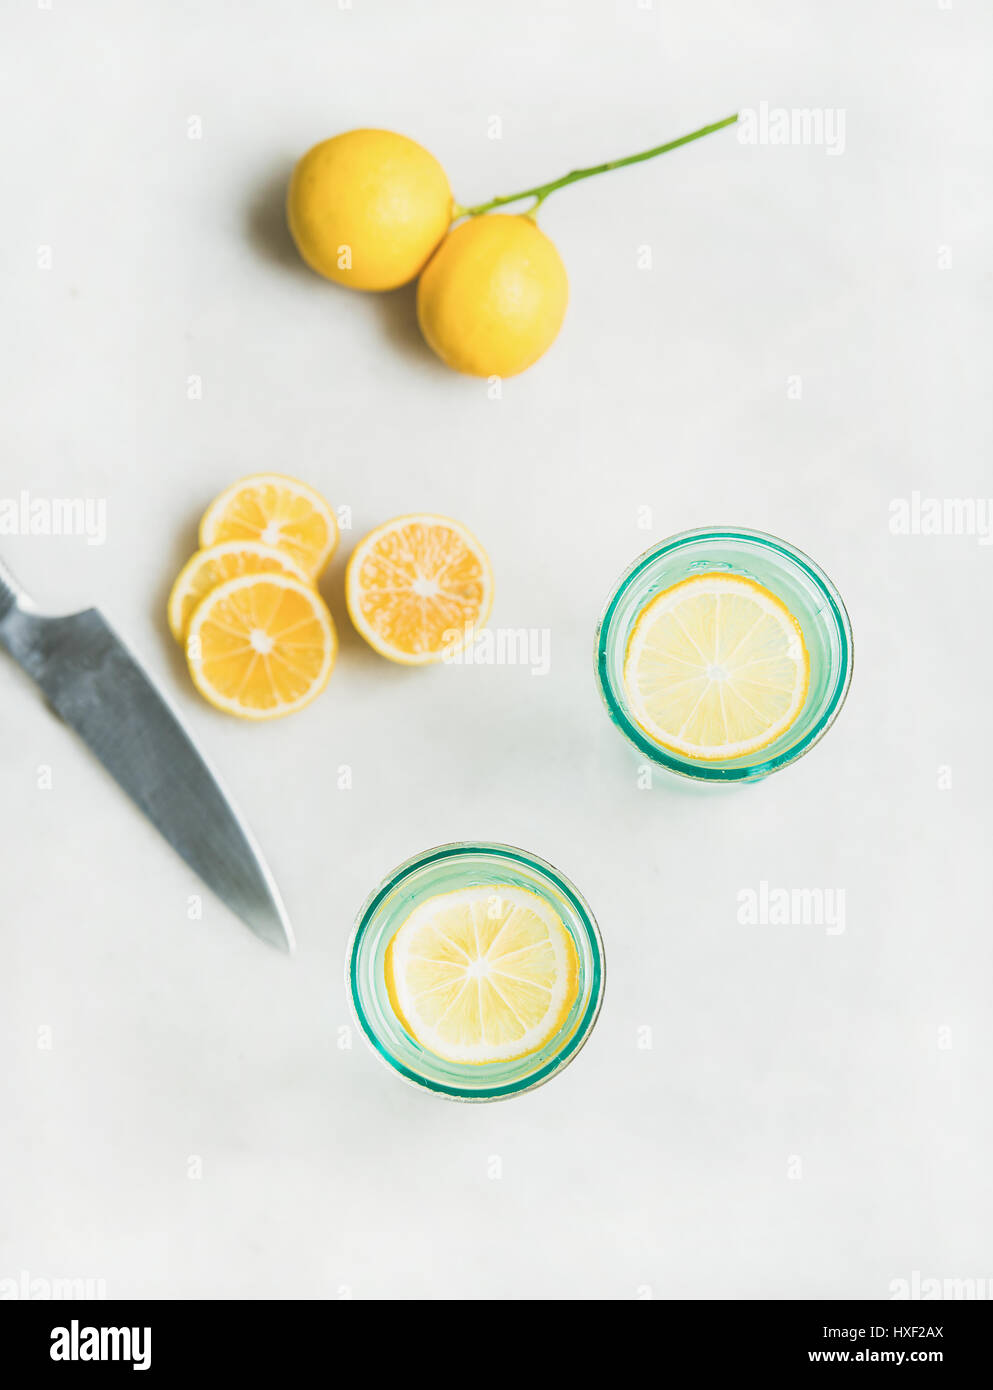 Detox lemon water in glasses and fresh lemons, top view Stock Photo